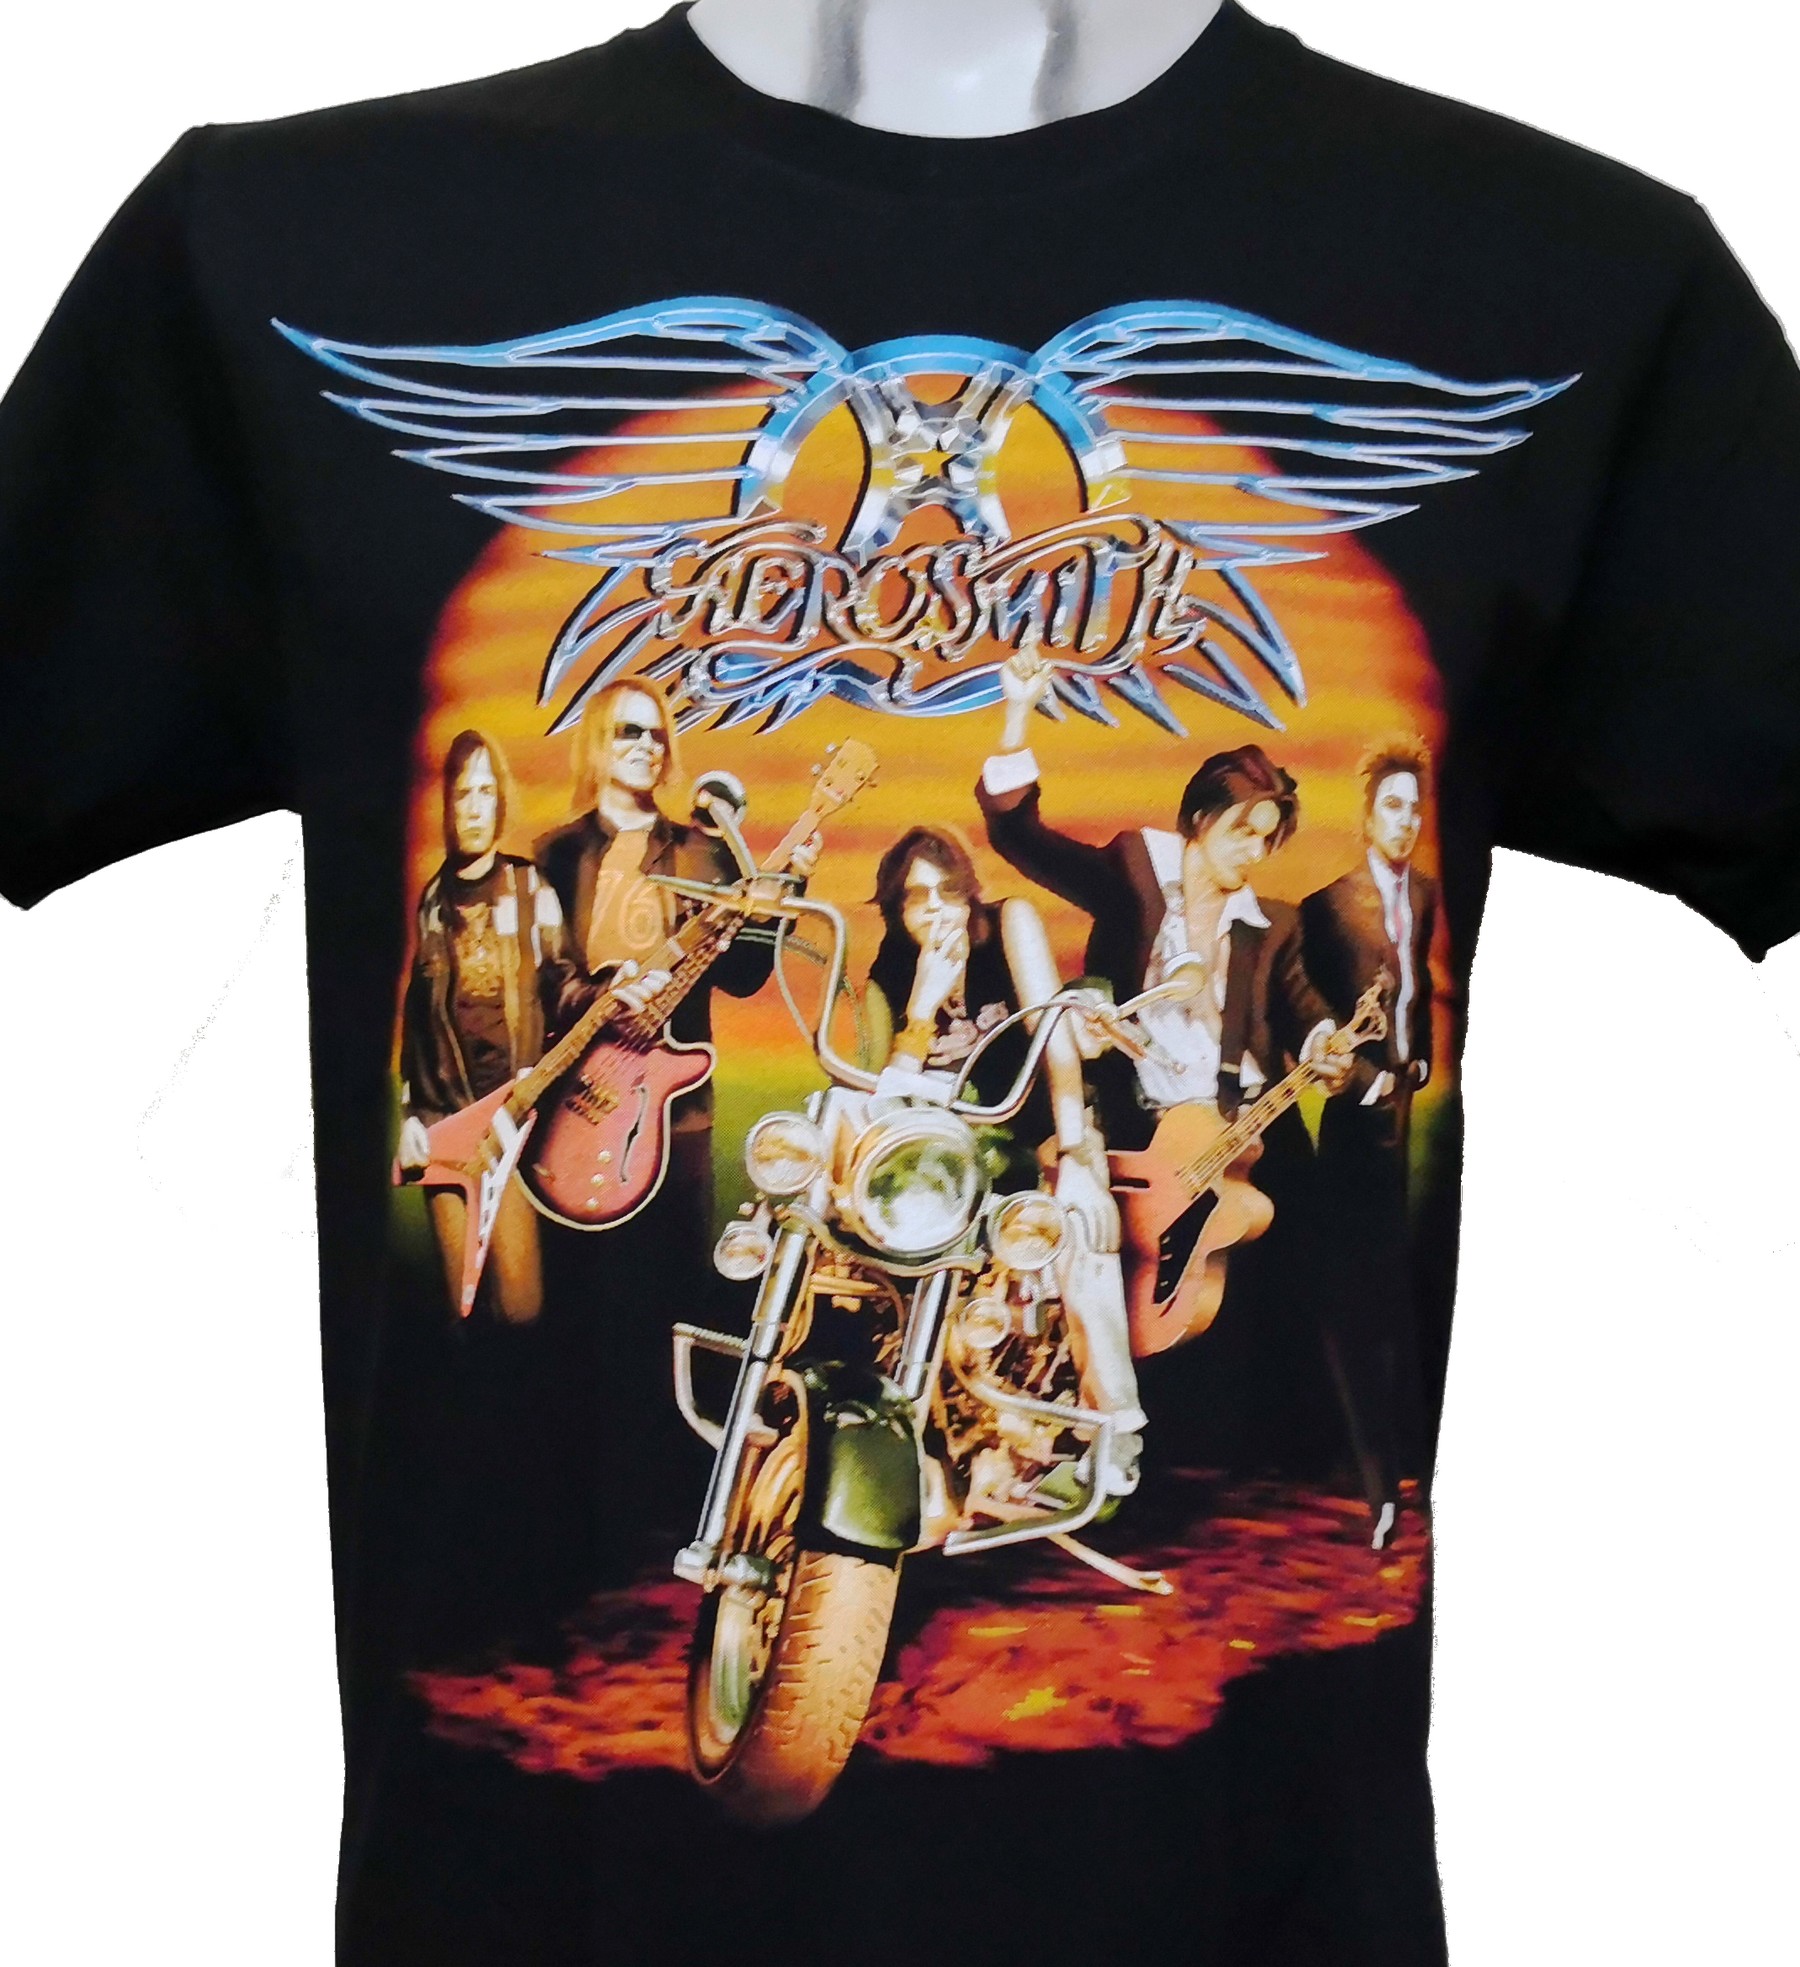 T-shirt "Aerosmith" s-xxxl 